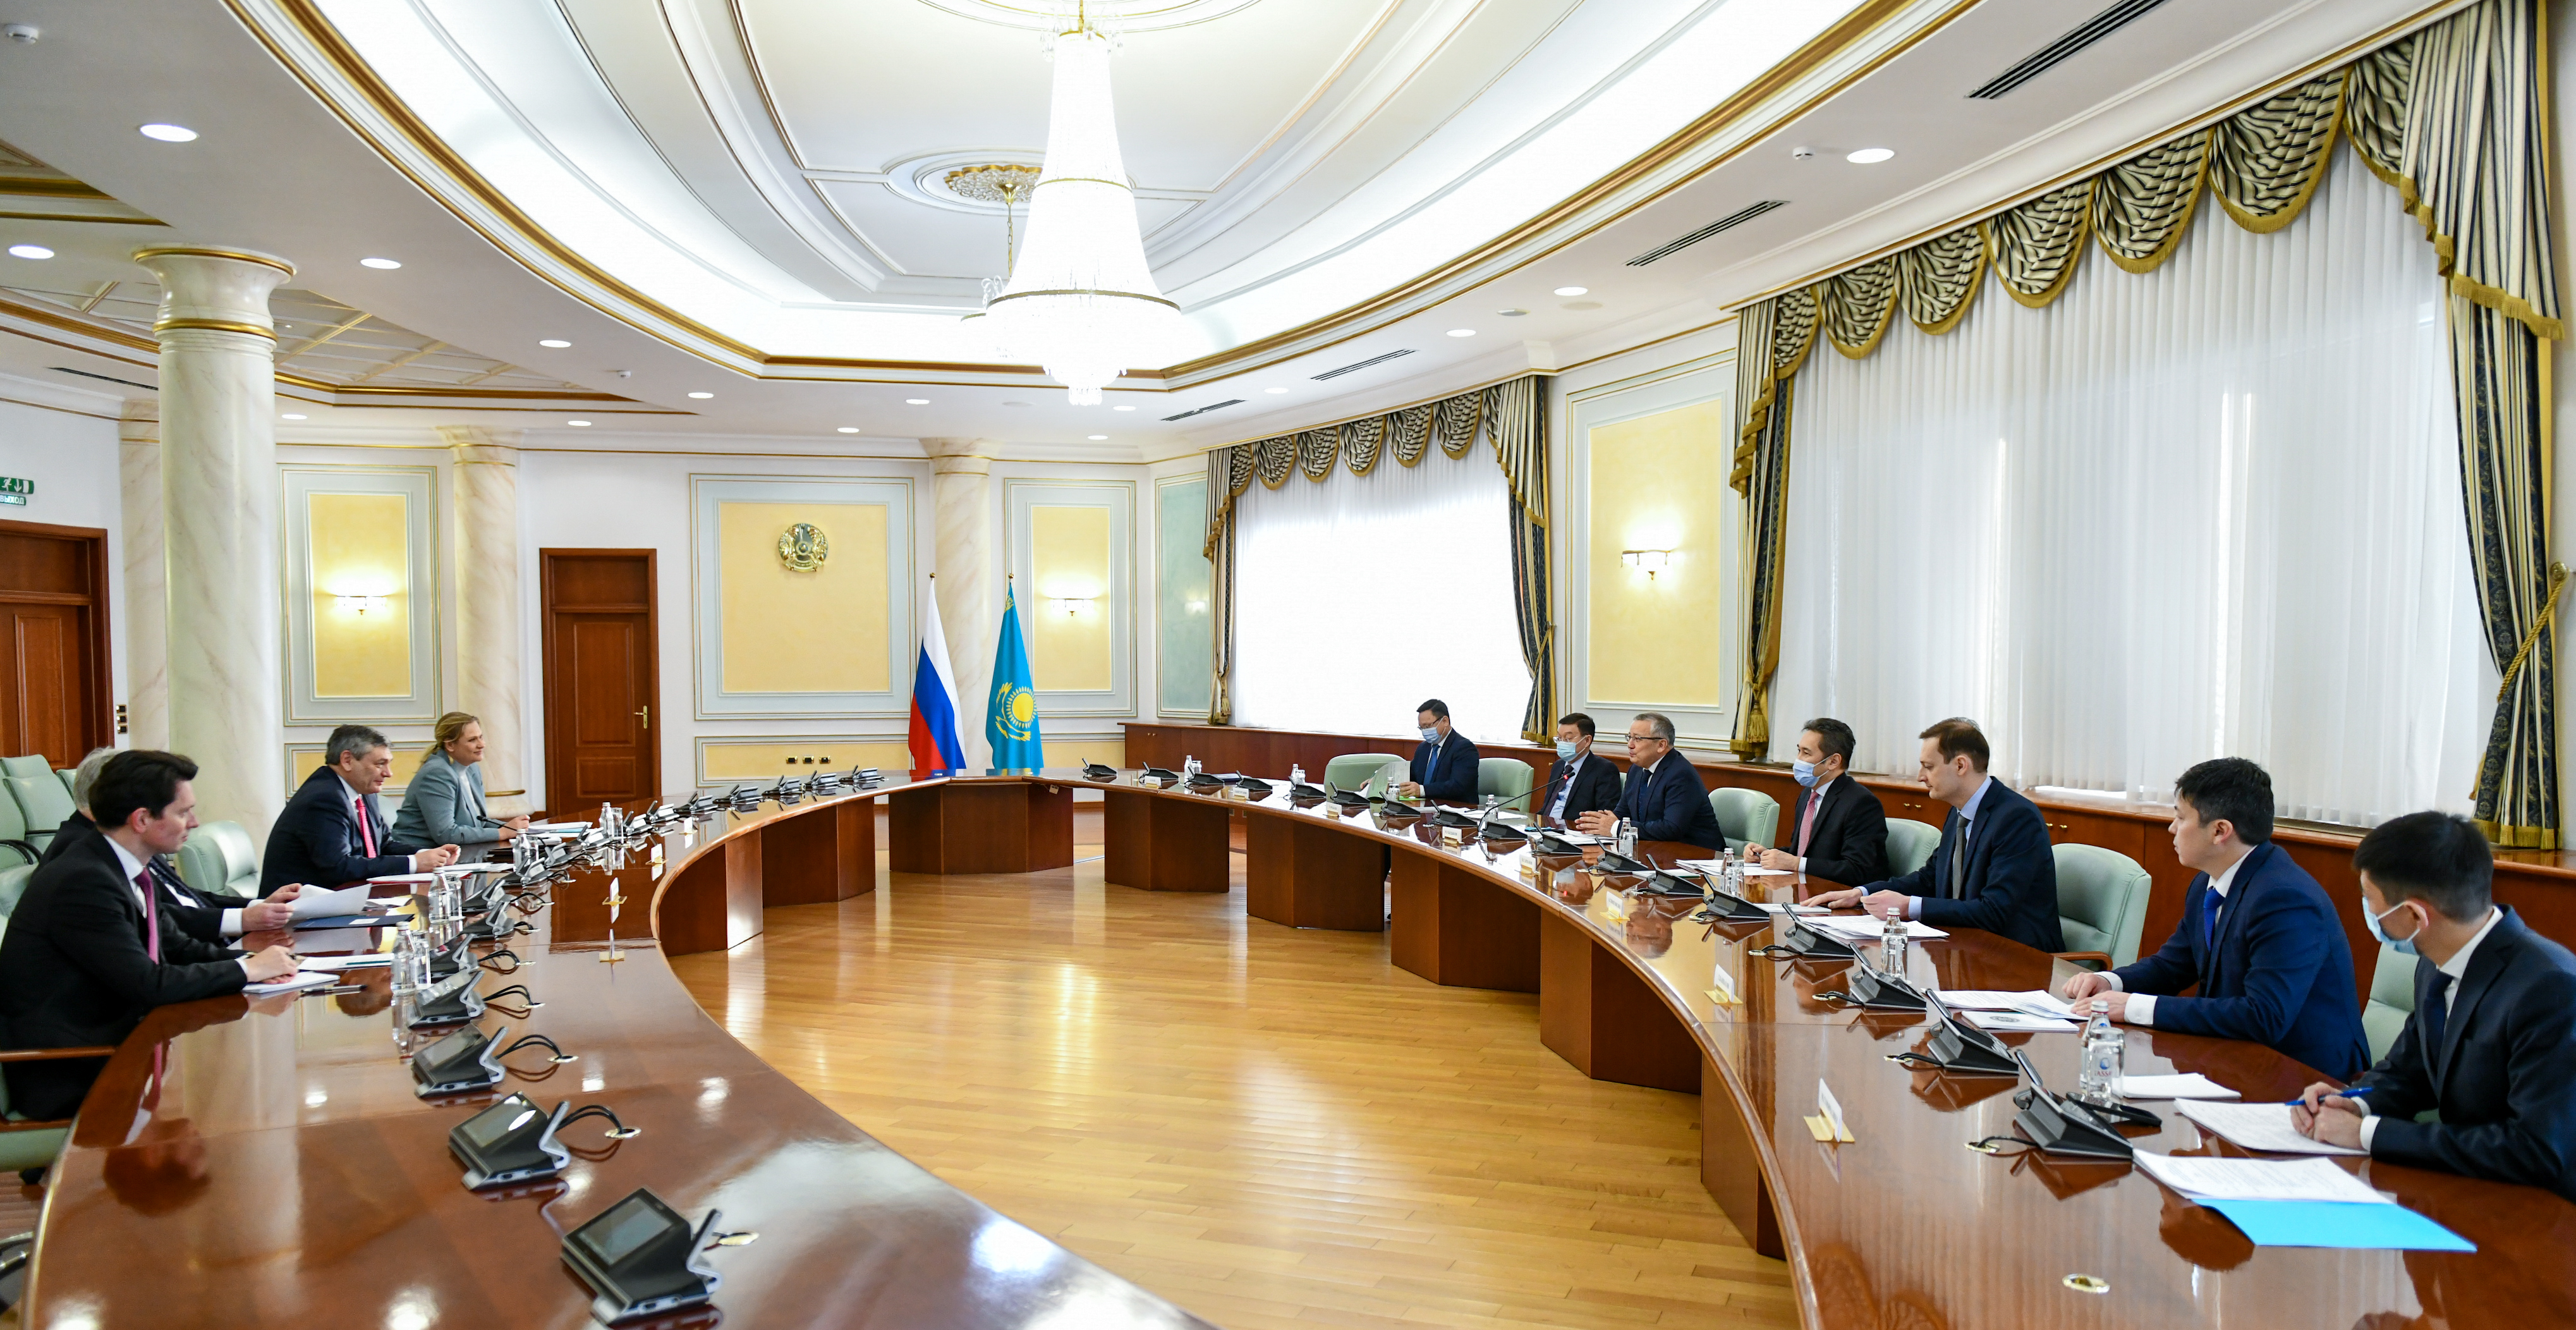  О плановых политических консультациях между МИД Казахстана и России